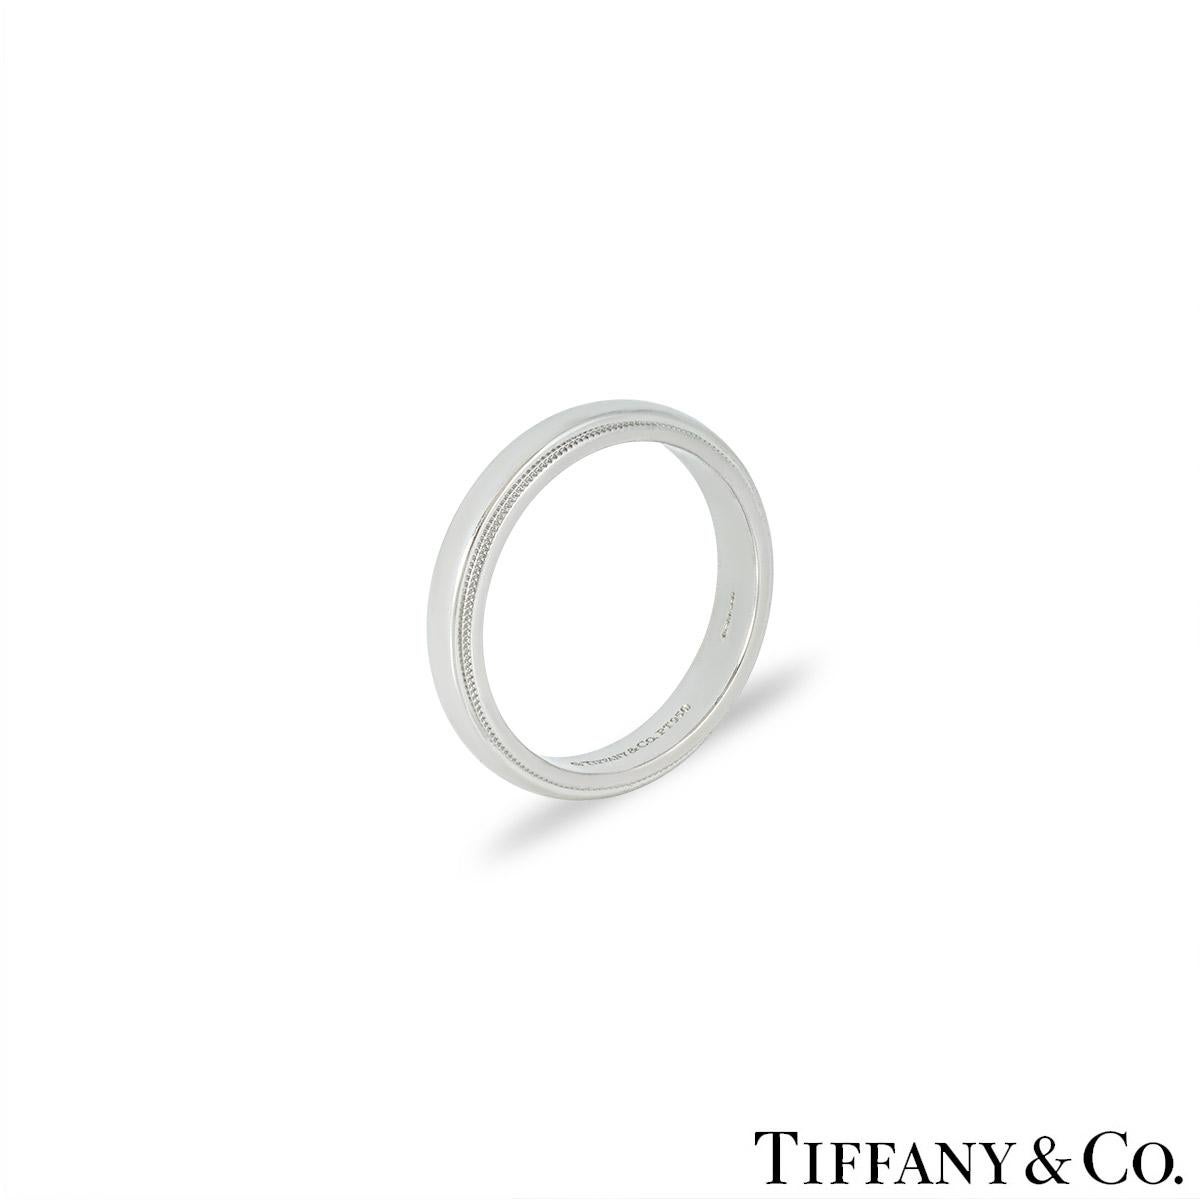 Une alliance moderne en platine de Tiffany & Co. de la collection Tiffany Together. L'anneau est doté d'un centre très poli et de bords texturés en milgrain. Il mesure 4 mm de large, correspond à la taille UK T - EU 61 et pèse 10,01 grammes.

Il est